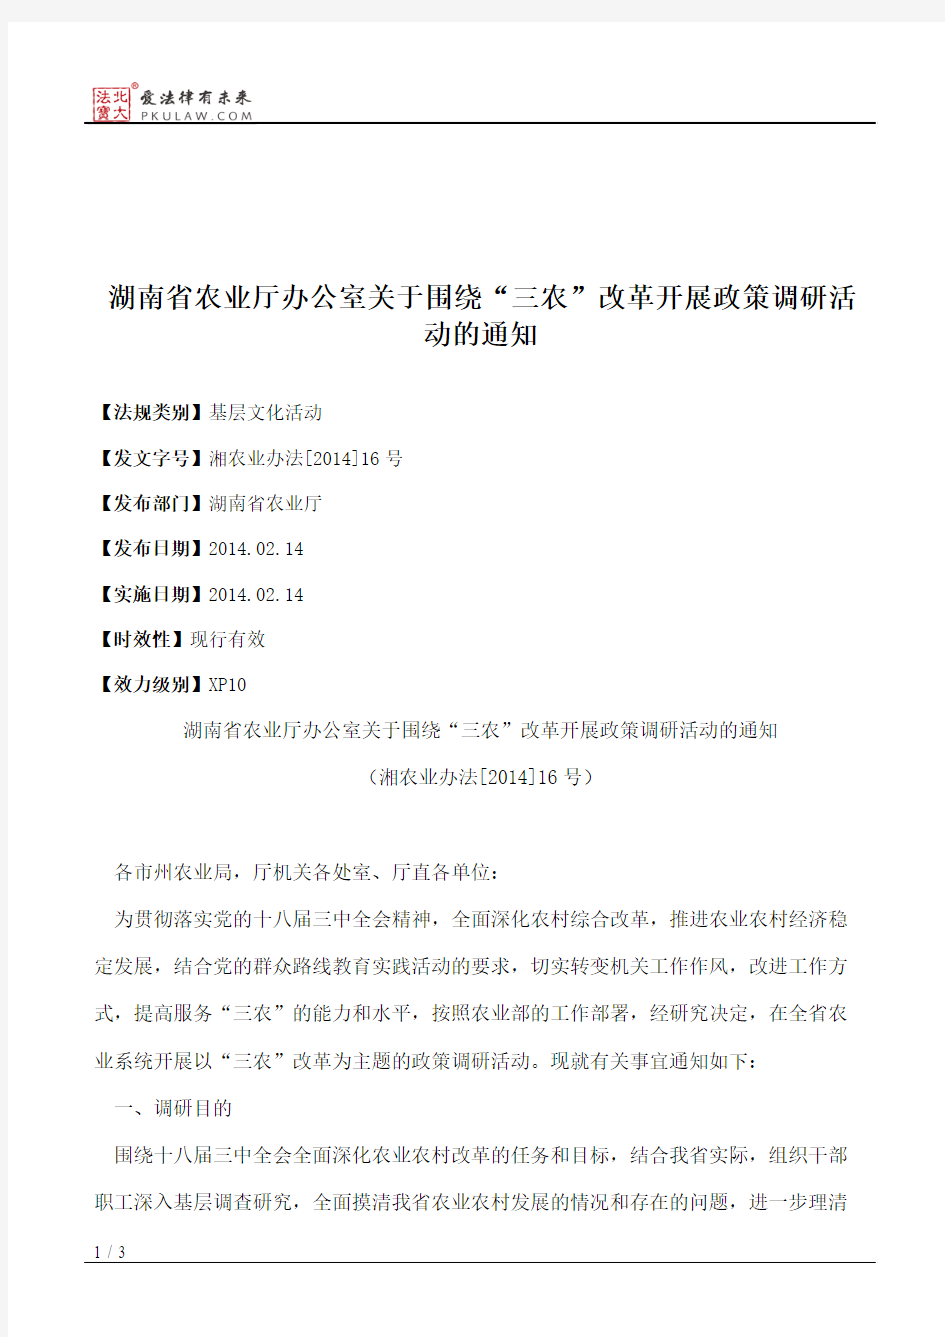 湖南省农业厅办公室关于围绕“三农”改革开展政策调研活动的通知